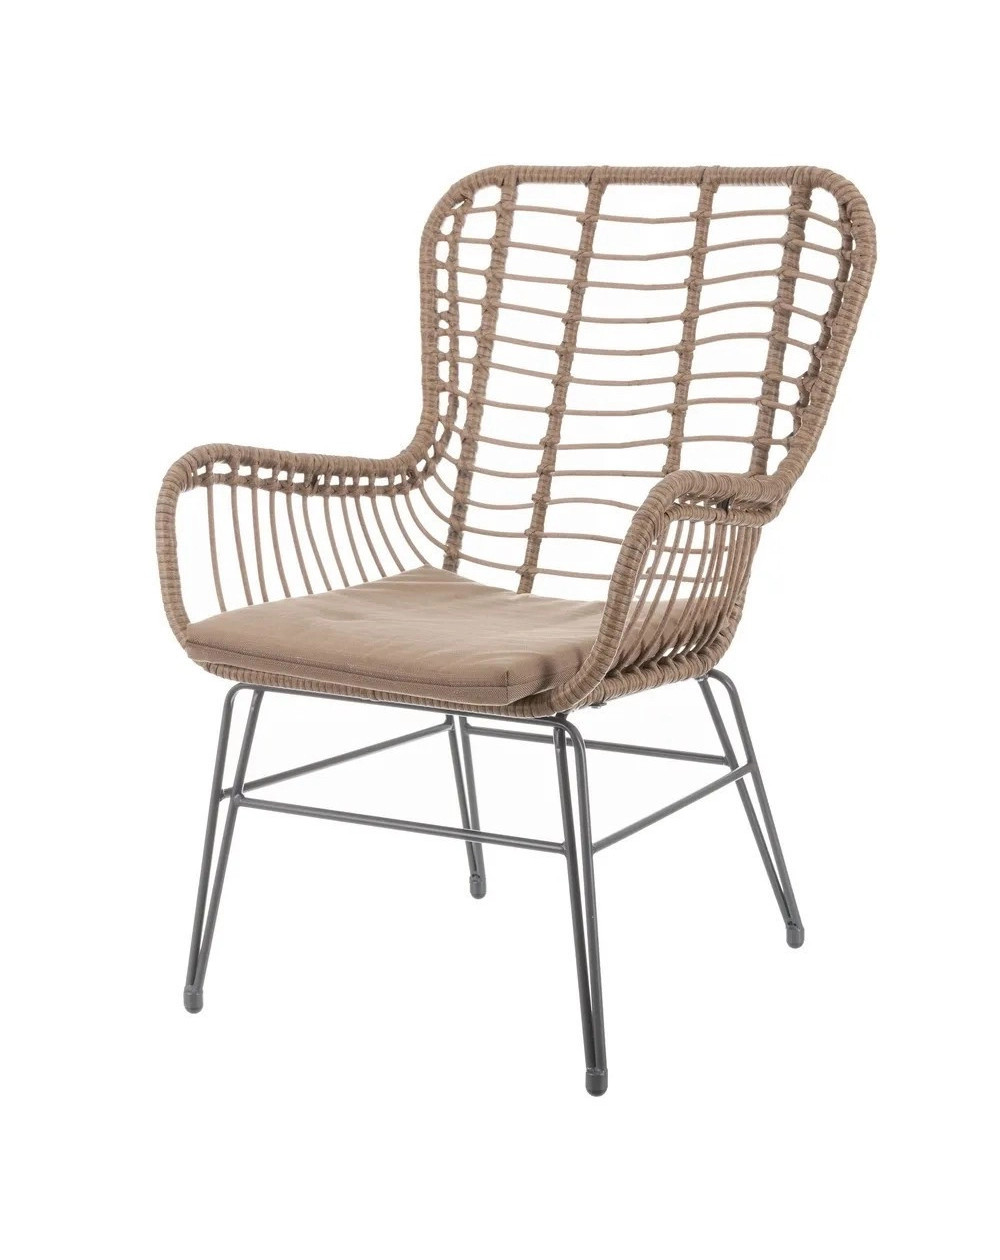 Cadeira Oslo Cromado DUDECO - Material do assento: polipropileno
Material da estrutura: aço reforçado cromado
Altura total: 82